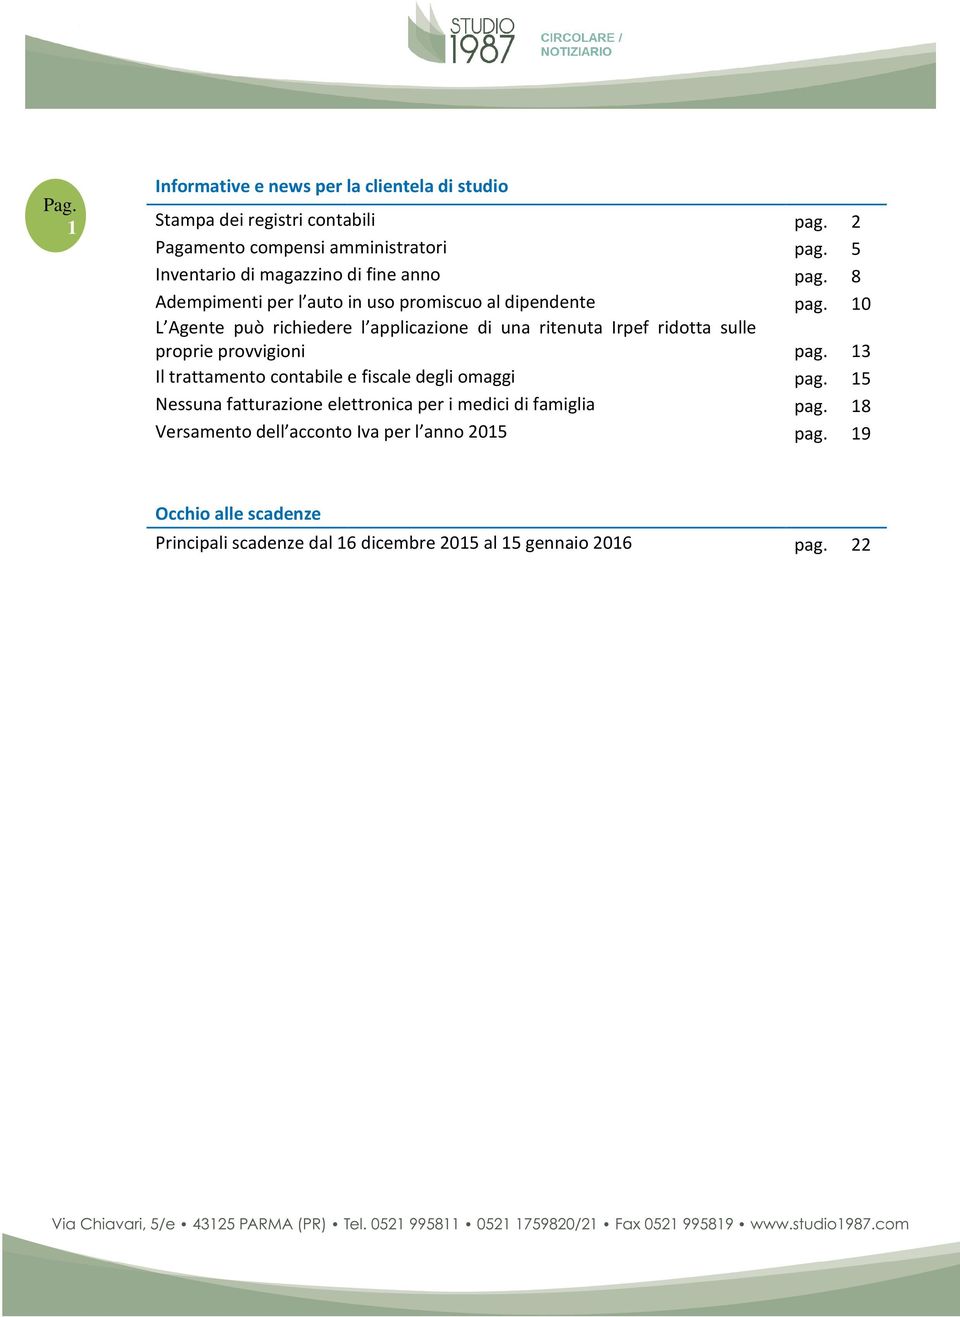 Il trattamento contabile e fiscale degli omaggi Nessuna fatturazione elettronica per i medici di famiglia Versamento dell acconto Iva per l anno 2015